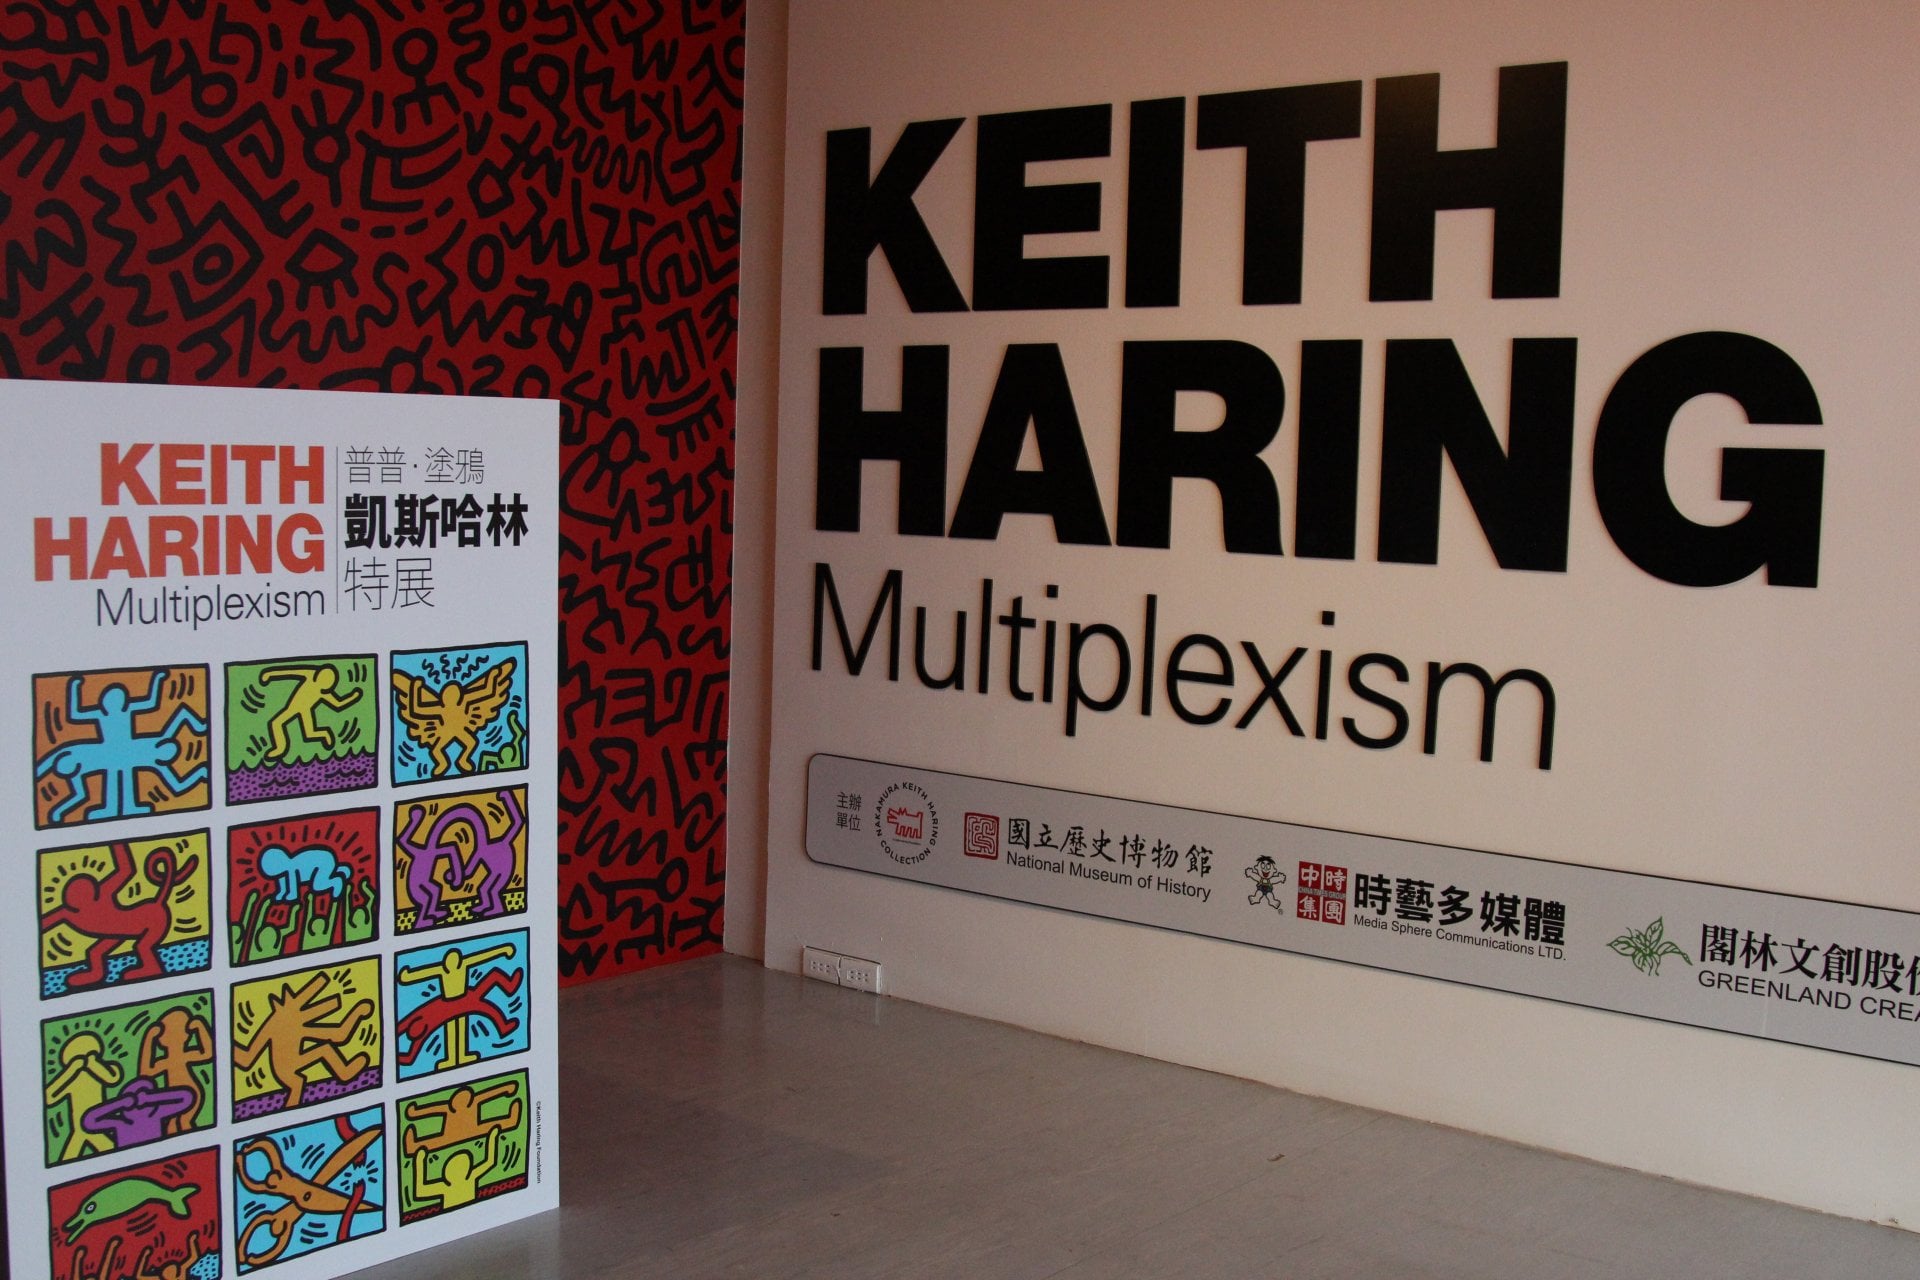 ＃ Keith Haring 名作首次來台：普普．塗鴉 凱斯哈林特展！ 41